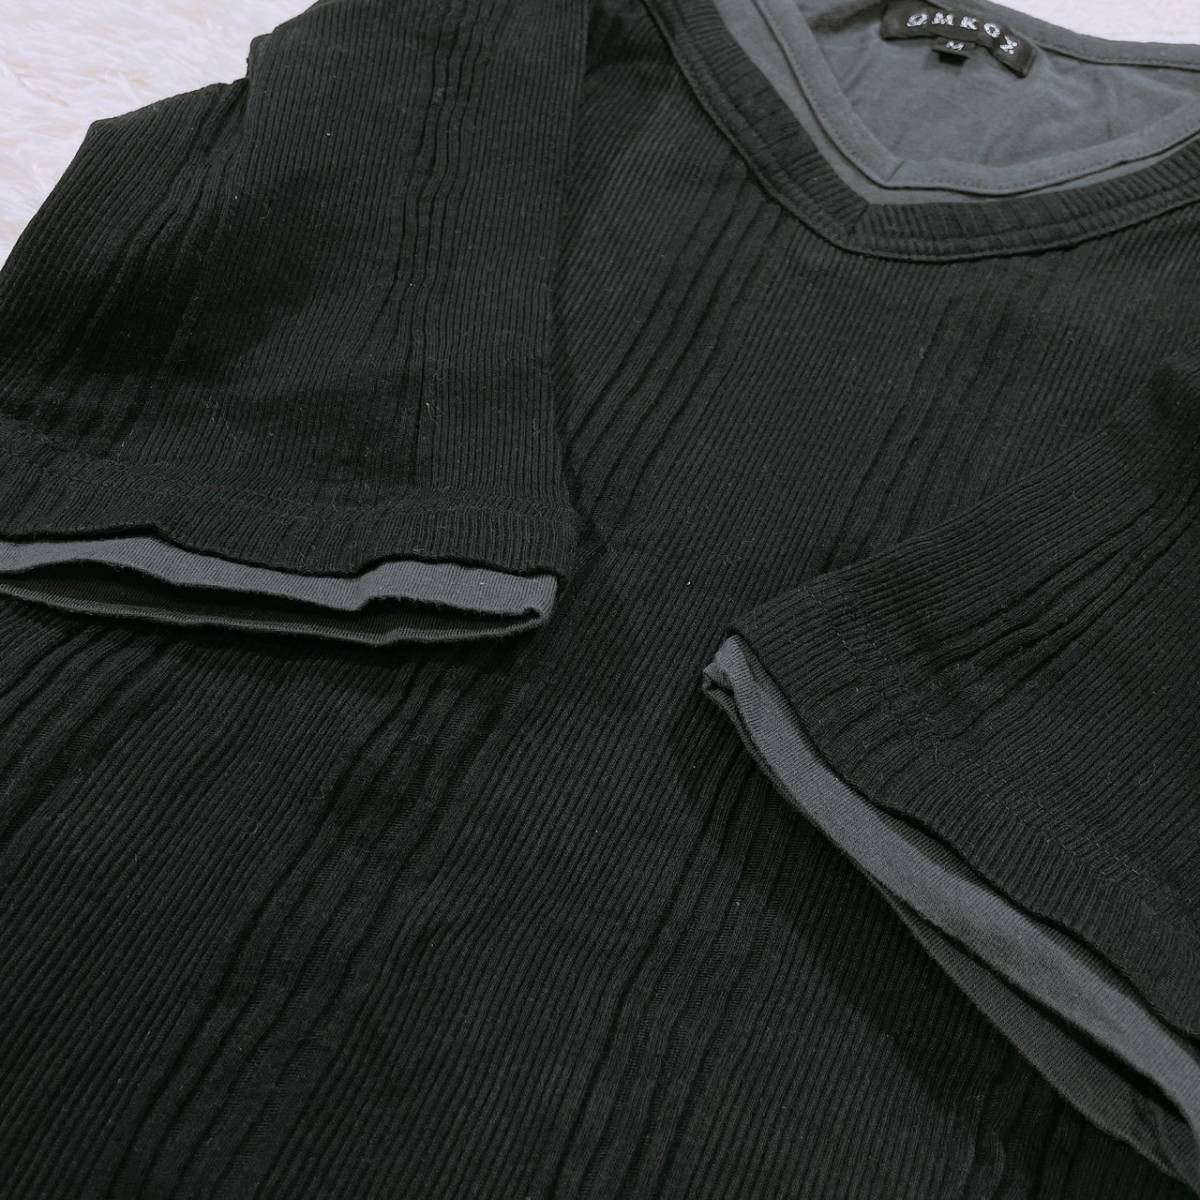 レディースM ΩMKOΣ トップス シャツ 半袖シャツ インナーシャツ ブラック カジュアル Vネック 重ね着風 シンプル ウモコス 【25335】